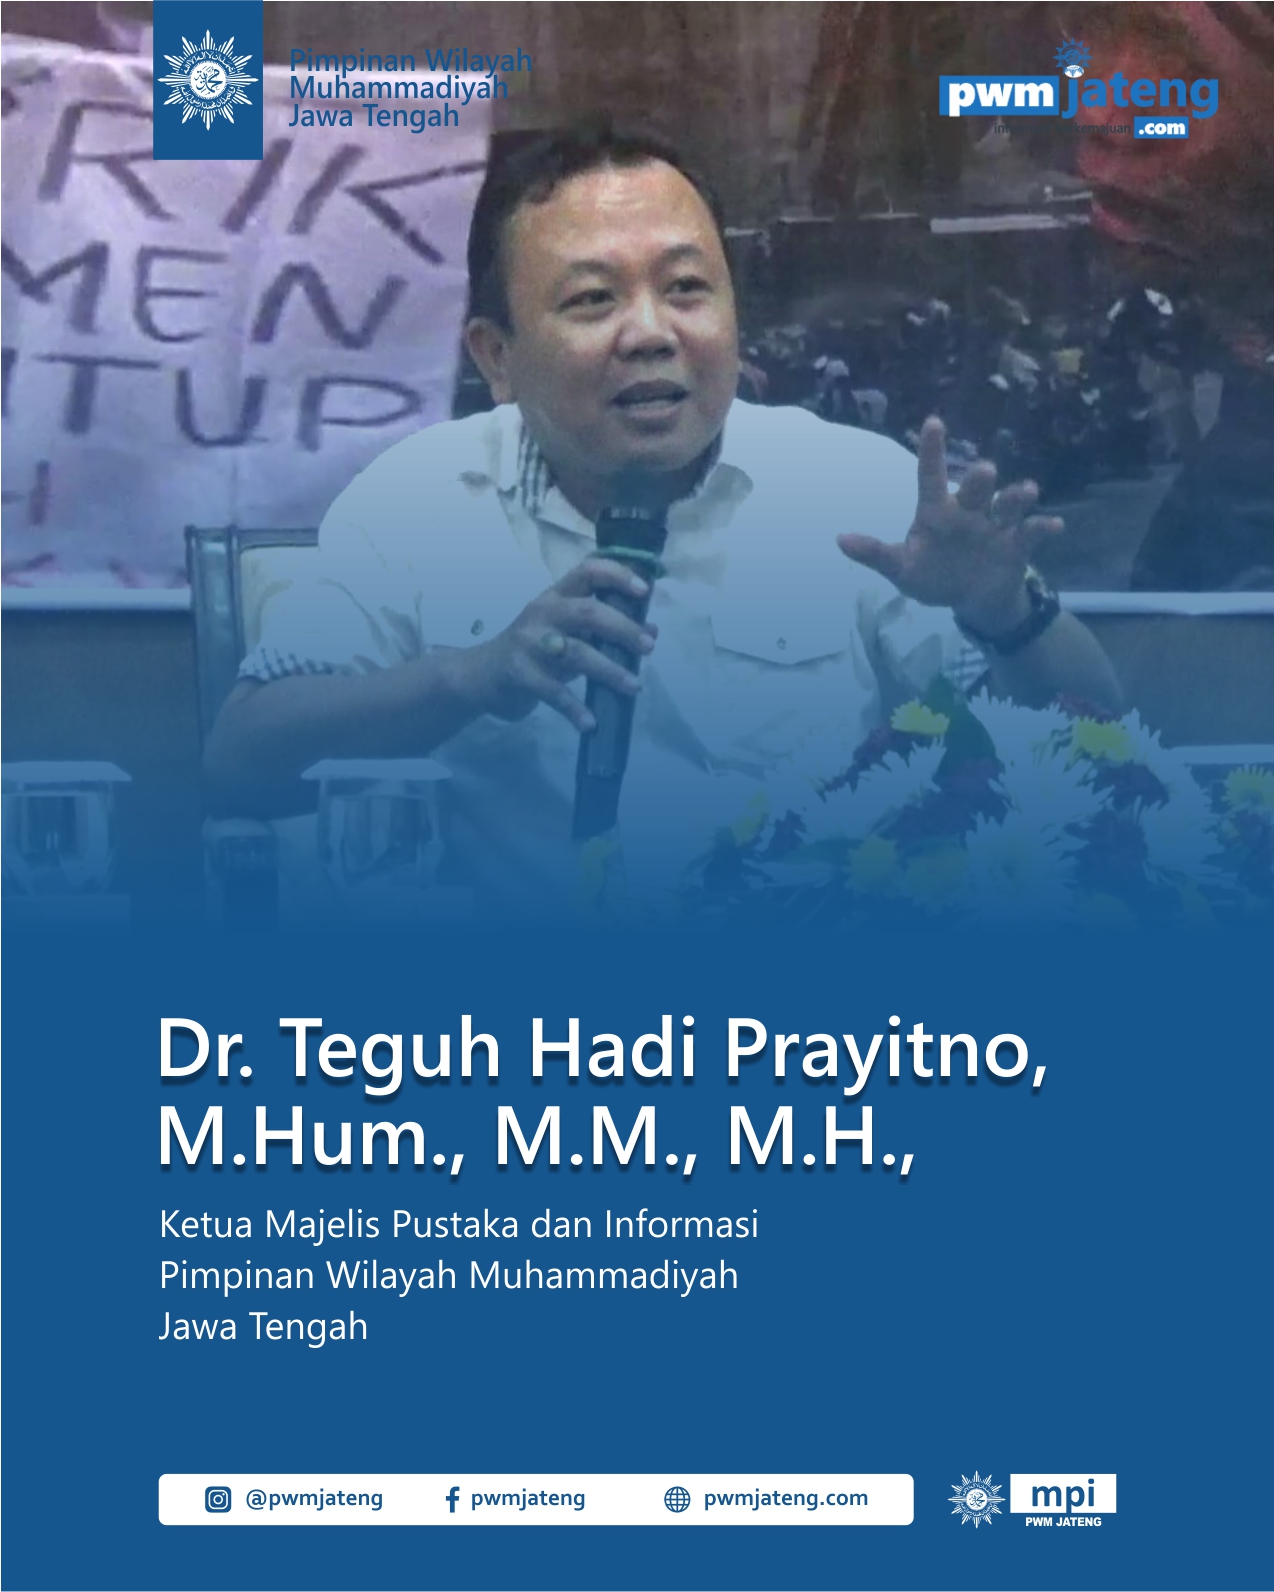 Dr. Teguh Hadi Prayitno, M.Hum., M.M., M.H.